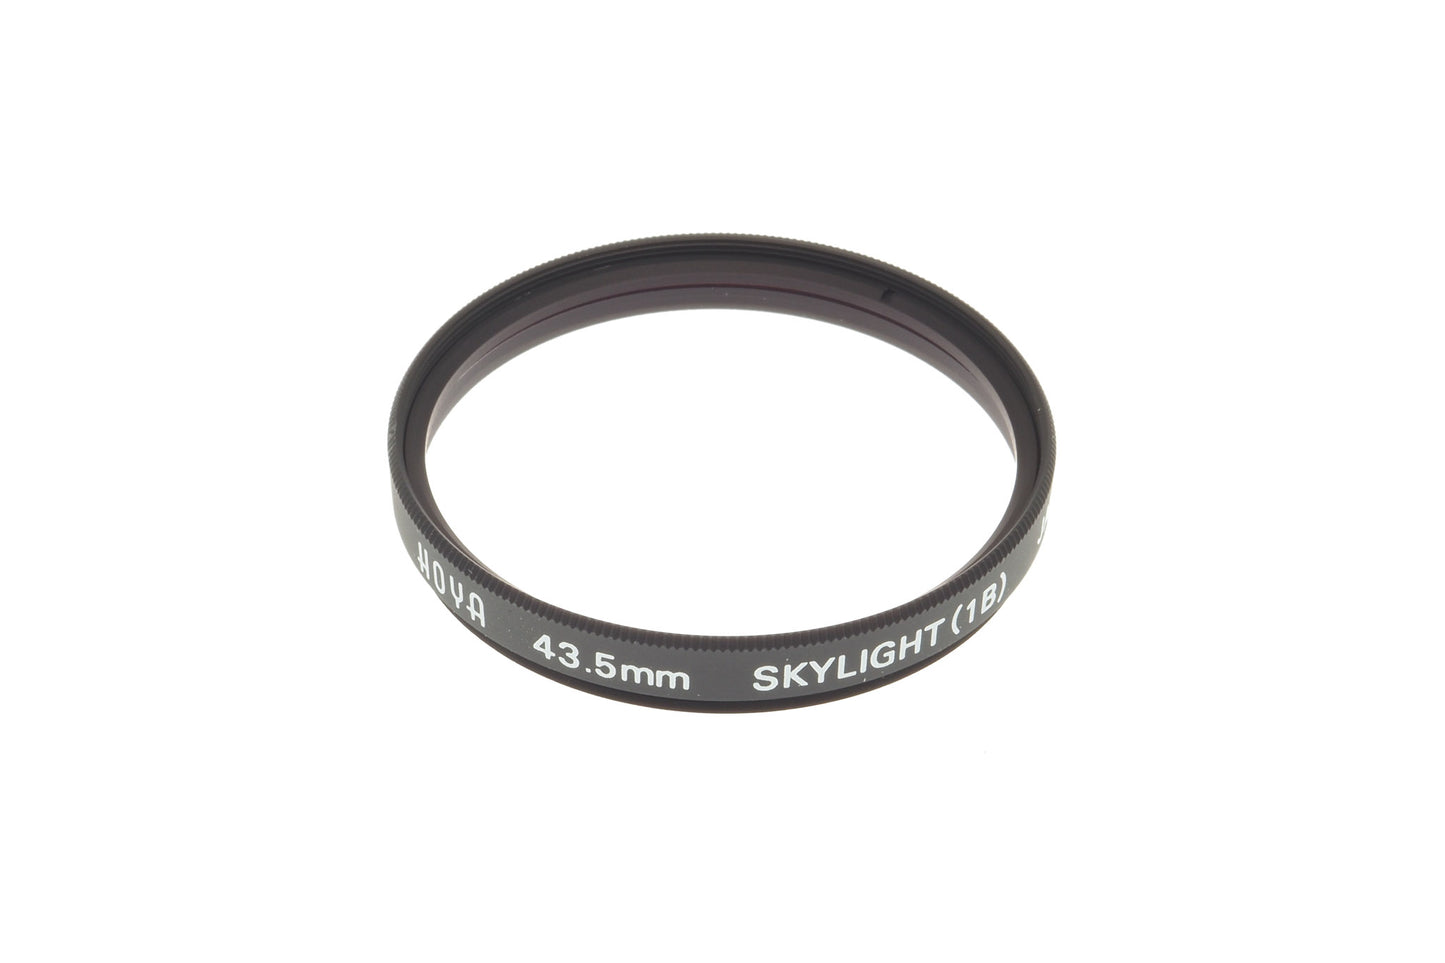 Hoya 43.5mm Skylight Filter (1B)